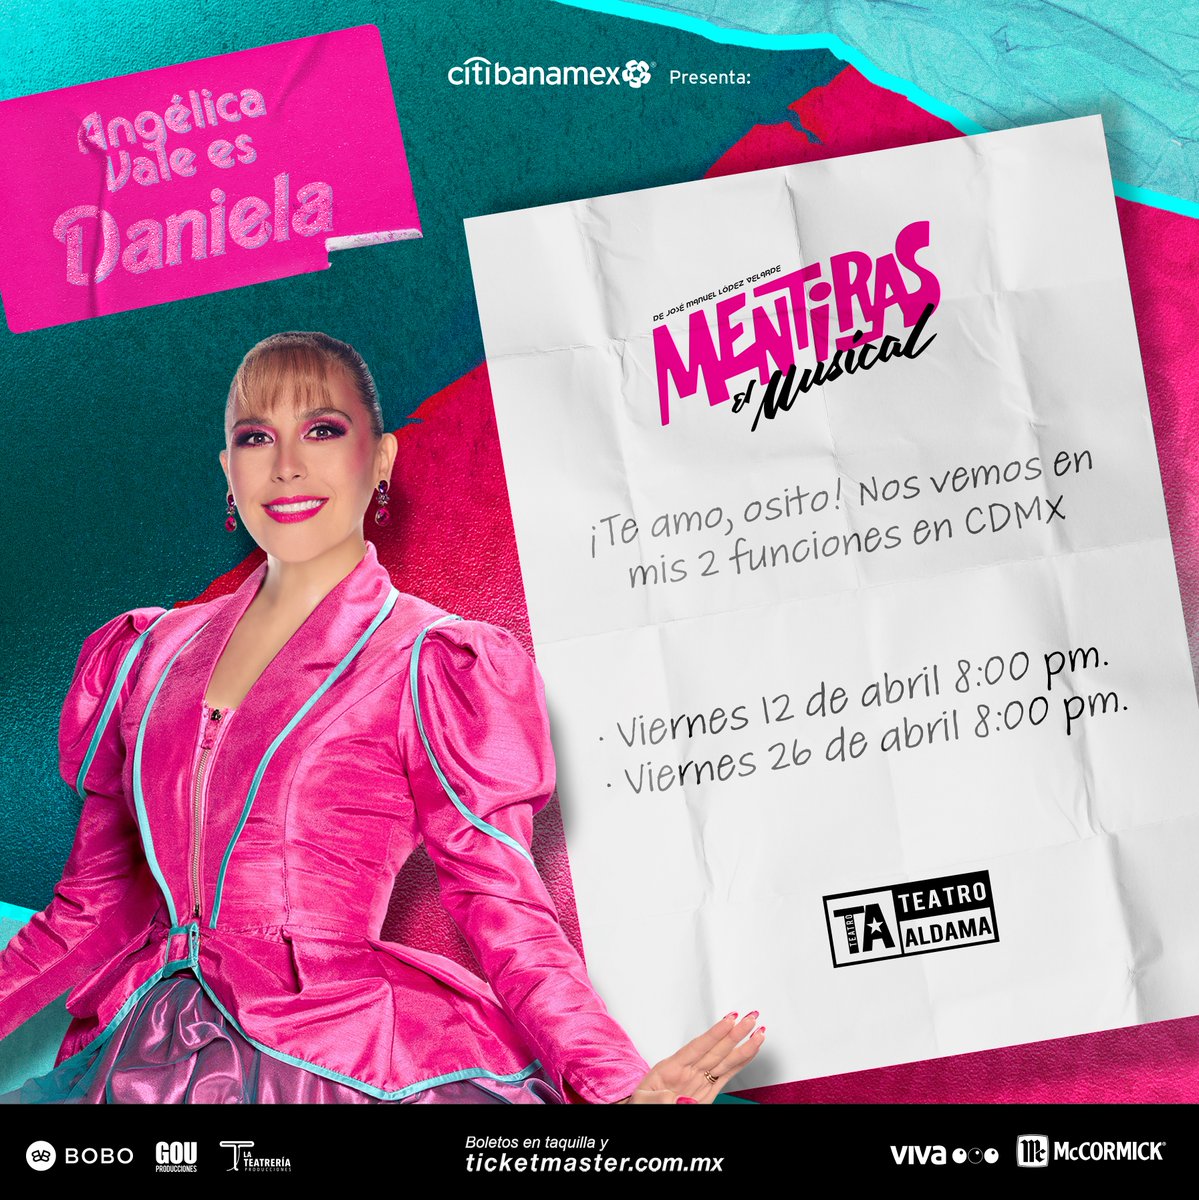 ¡Ella regresa al Teatro Aldama 2 únicas funciones! 💖🎶 @angelicavale será Daniela este 12 y 26 de abril en #MentirasElMusical. 😍 No te quedes fuera de estas noches especiales. Boletos: bit.ly/MentirasElMusi…